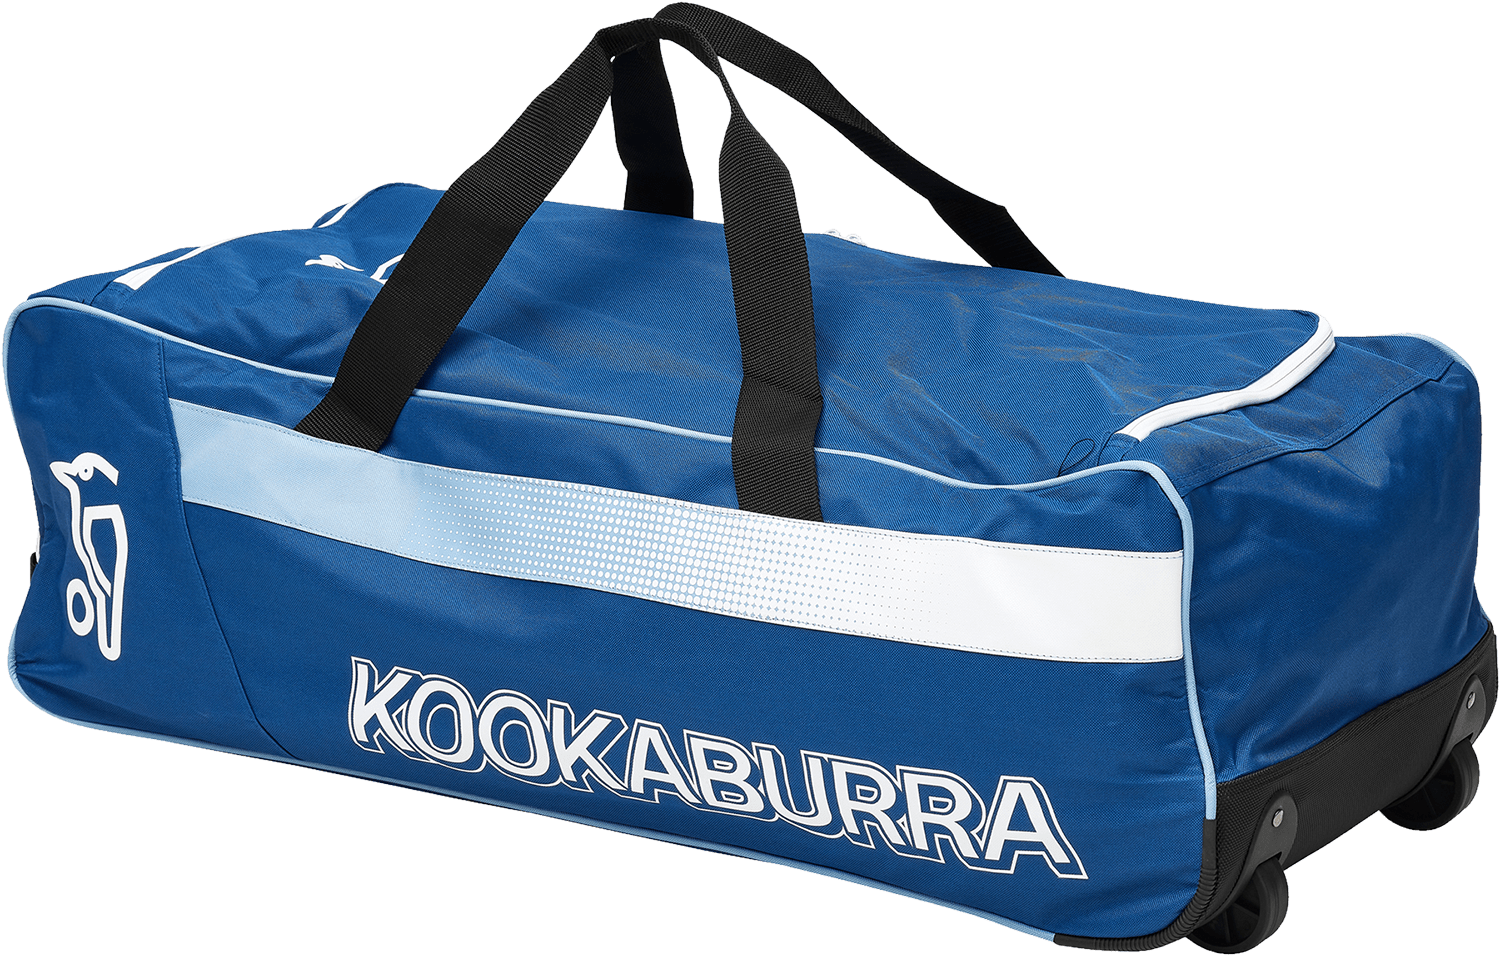 Kookaburra Cricket Bags Blue Kookaburra 4.0 Wheelie Cricket Bag